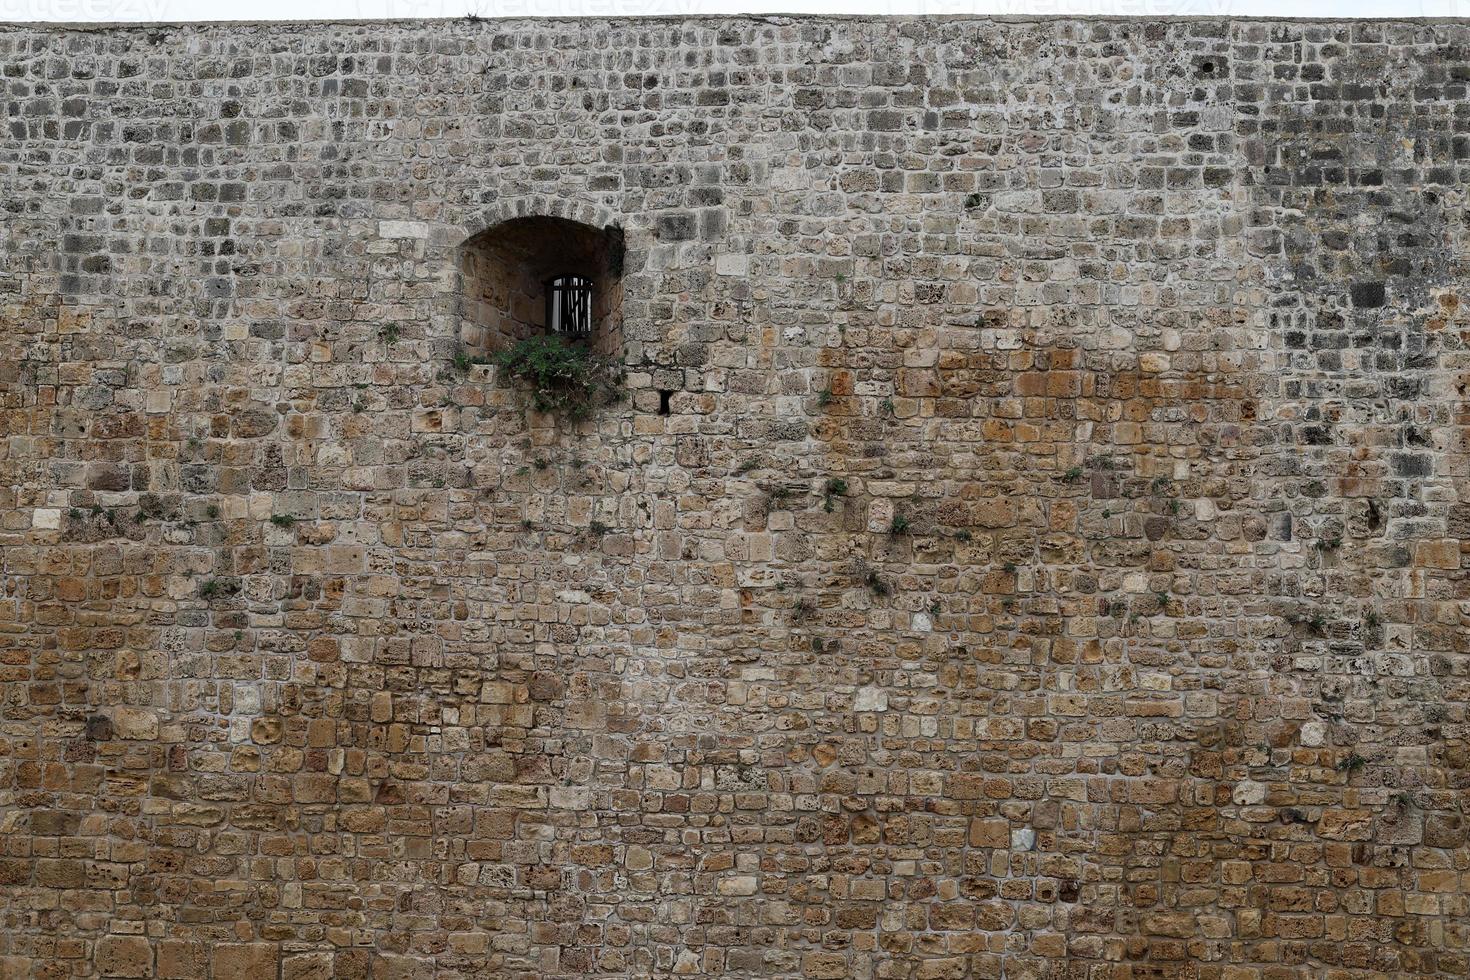 parede de pedra de uma antiga fortaleza à beira-mar em israel. foto